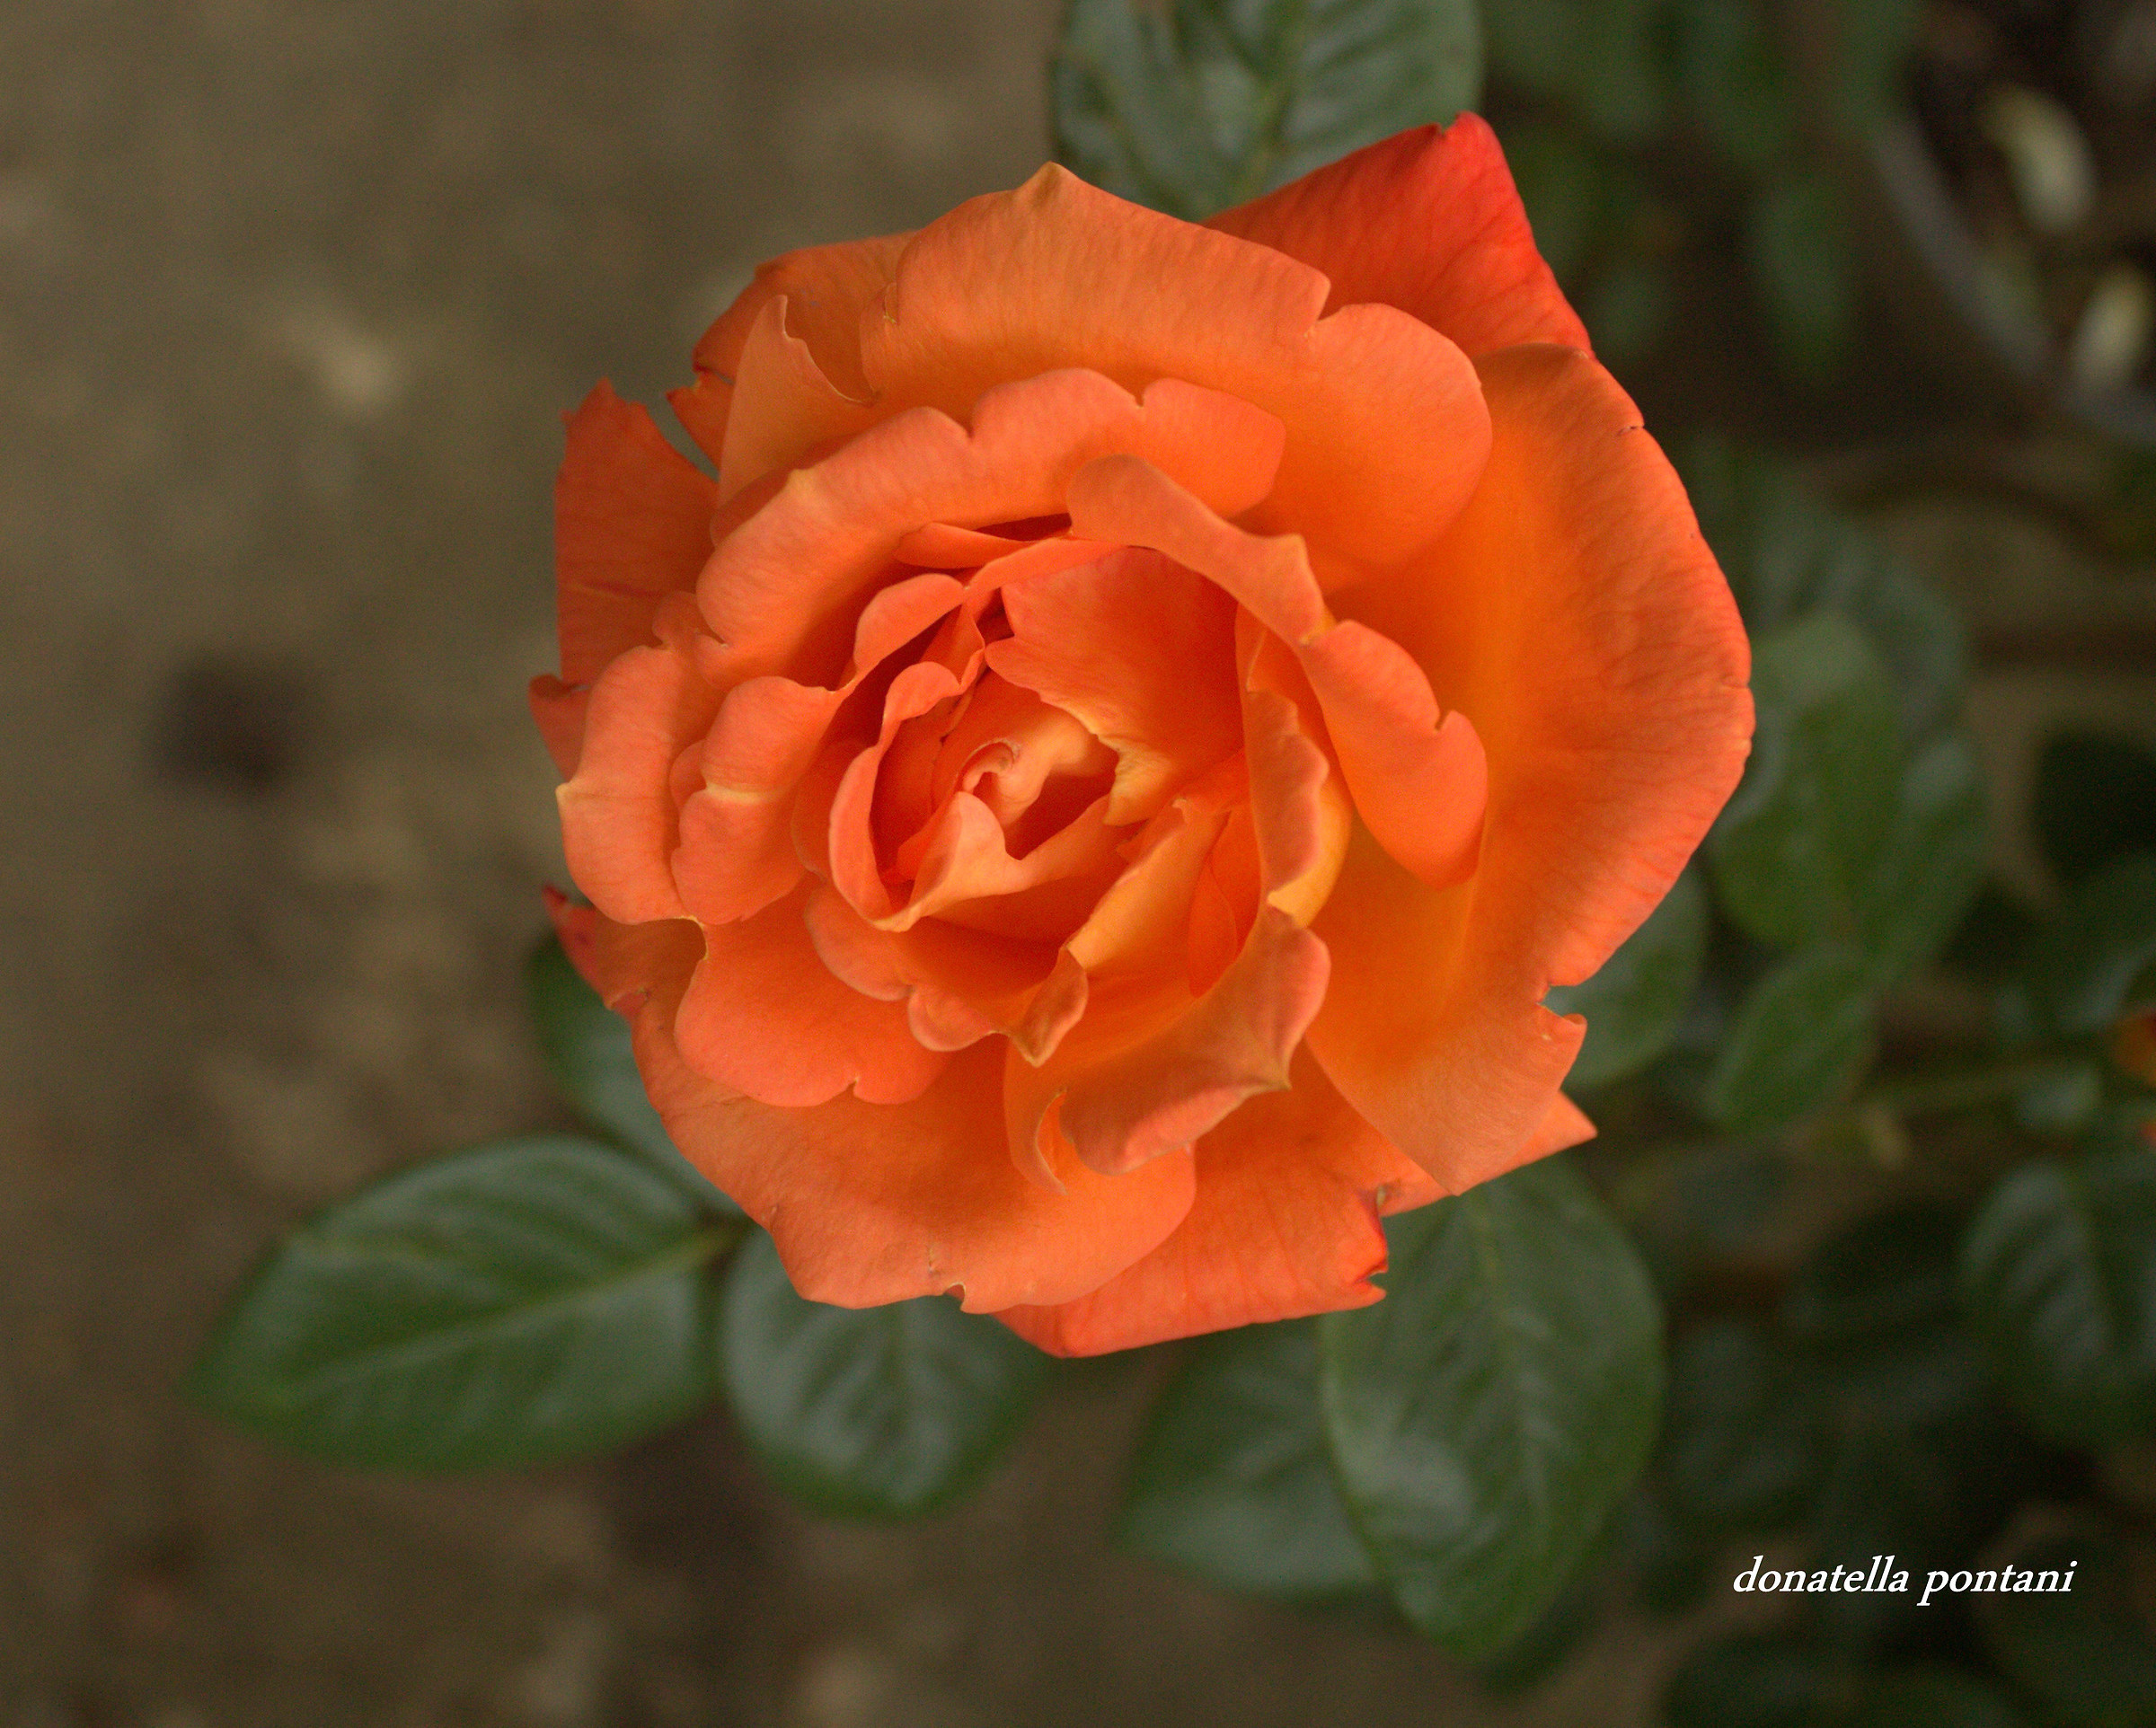 Delicate orange rose...